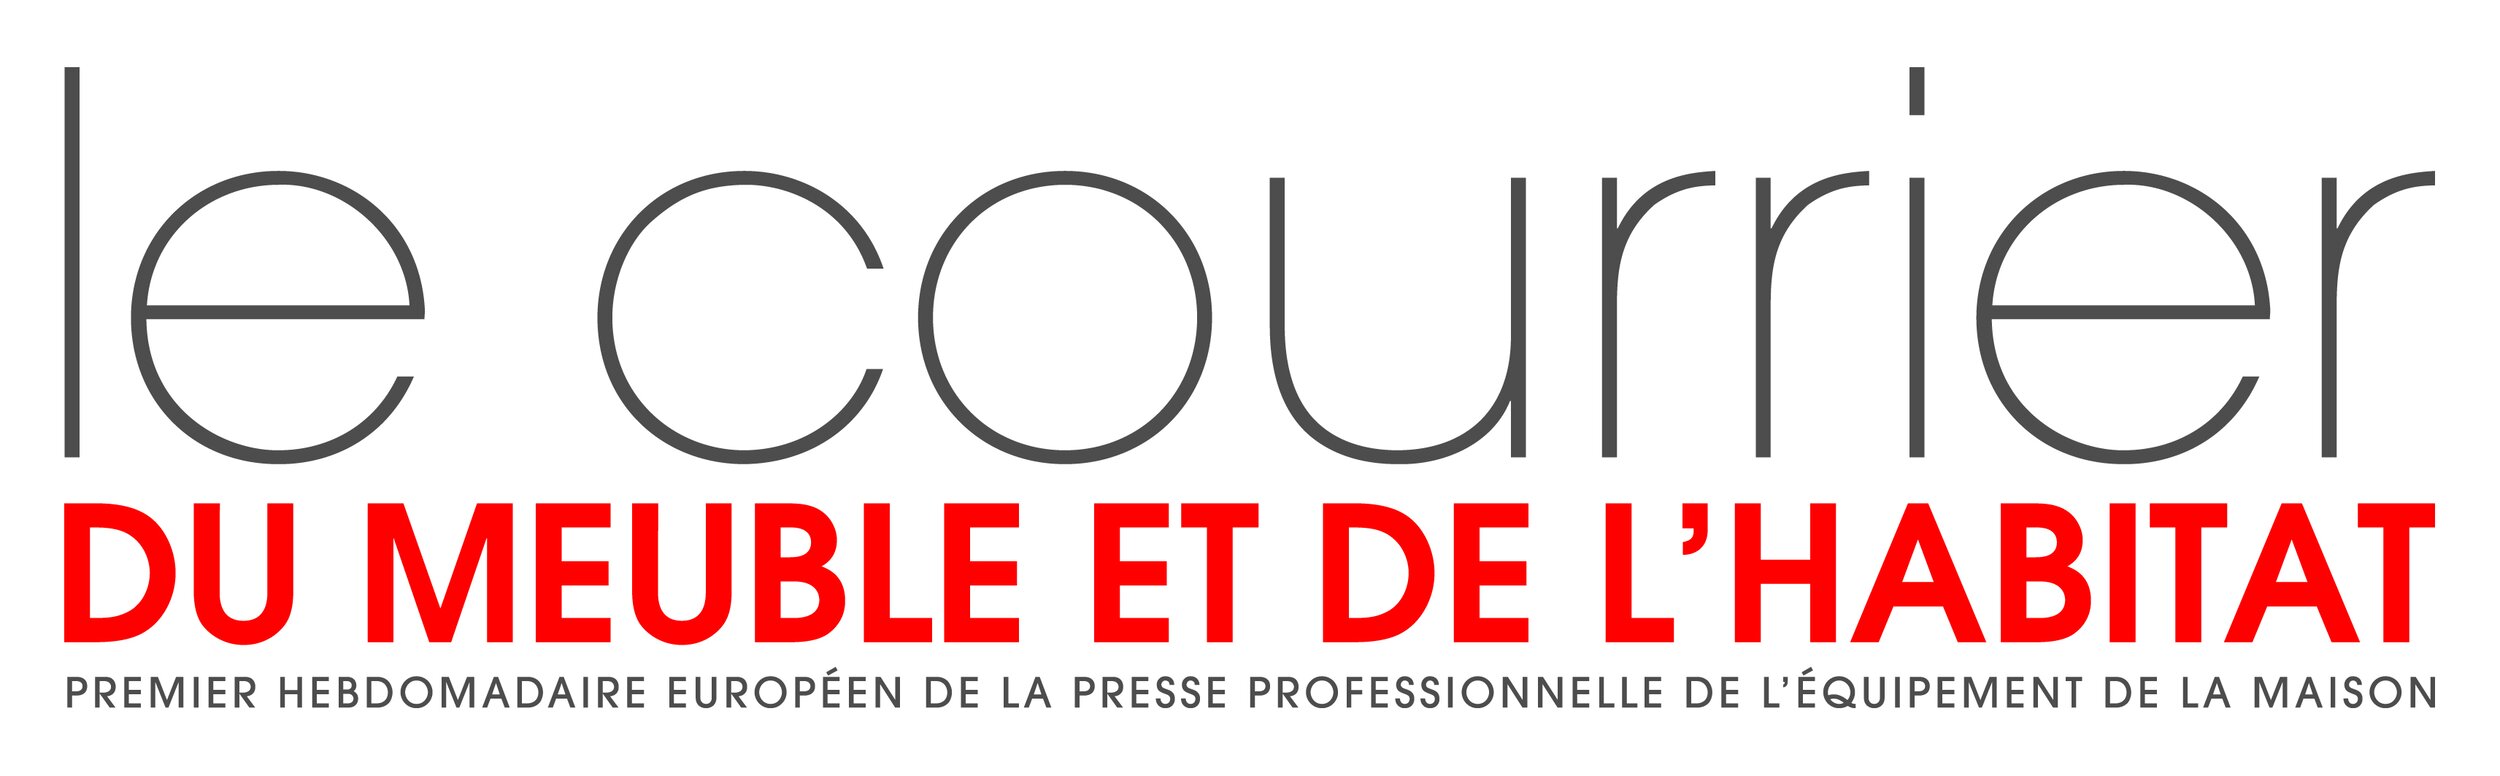 20190301-logo-le-courrier-du-meuble-et-de-l-habitat.jpg